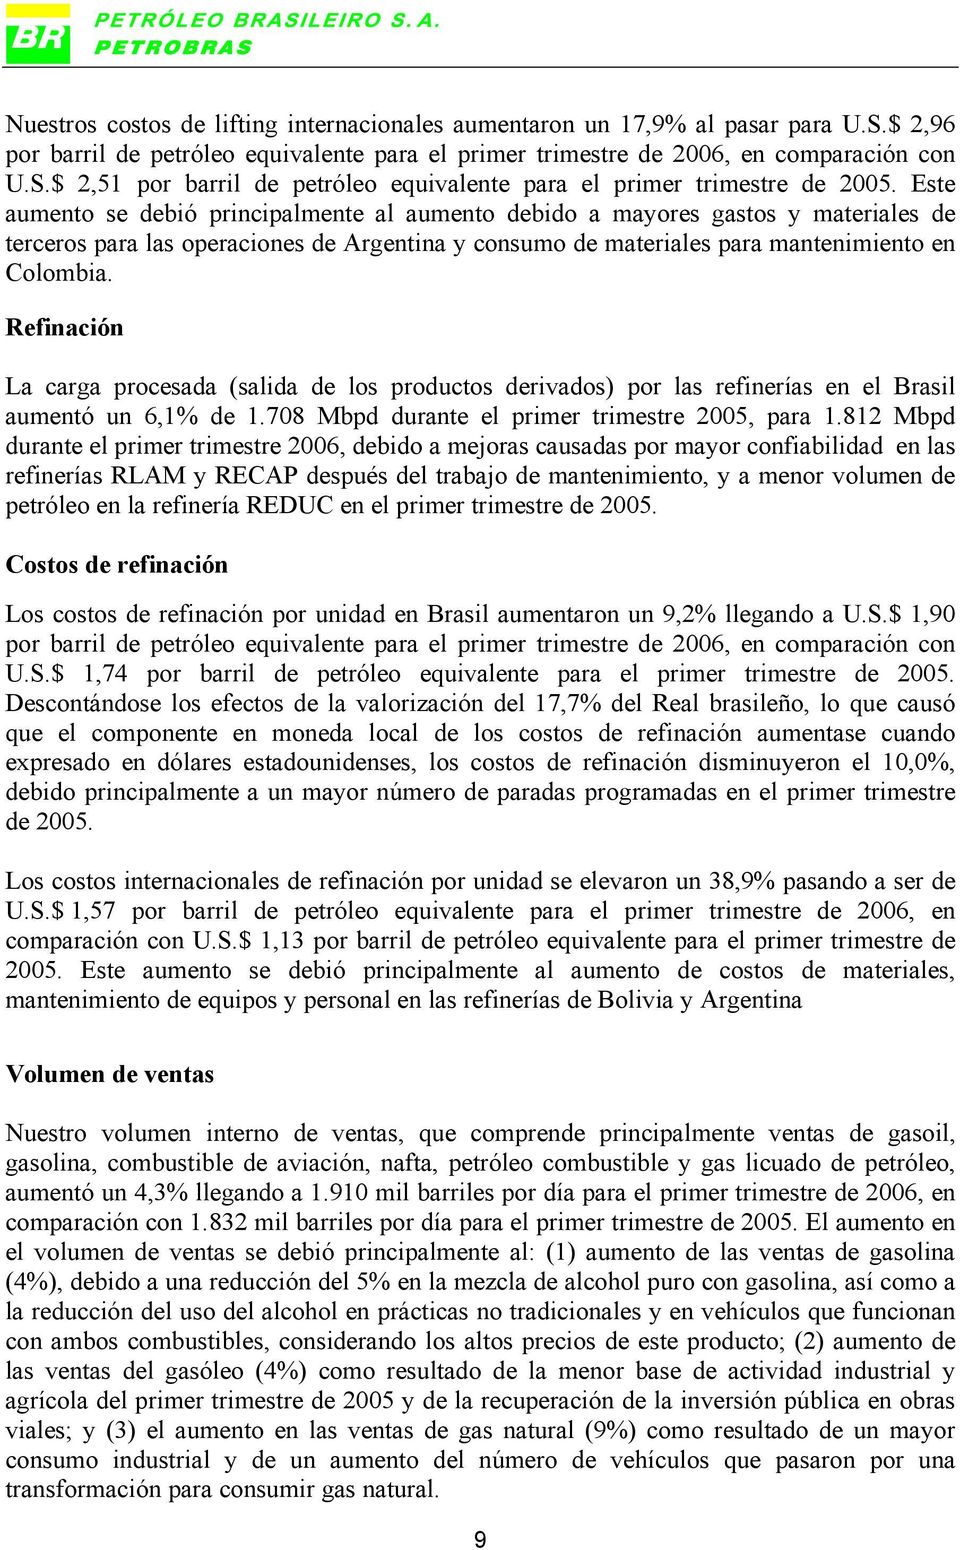 Refinación La carga procesada (salida de los productos derivados) por las refinerías en el Brasil aumentó un 6,1% de 1.708 Mbpd durante el primer trimestre 2005, para 1.